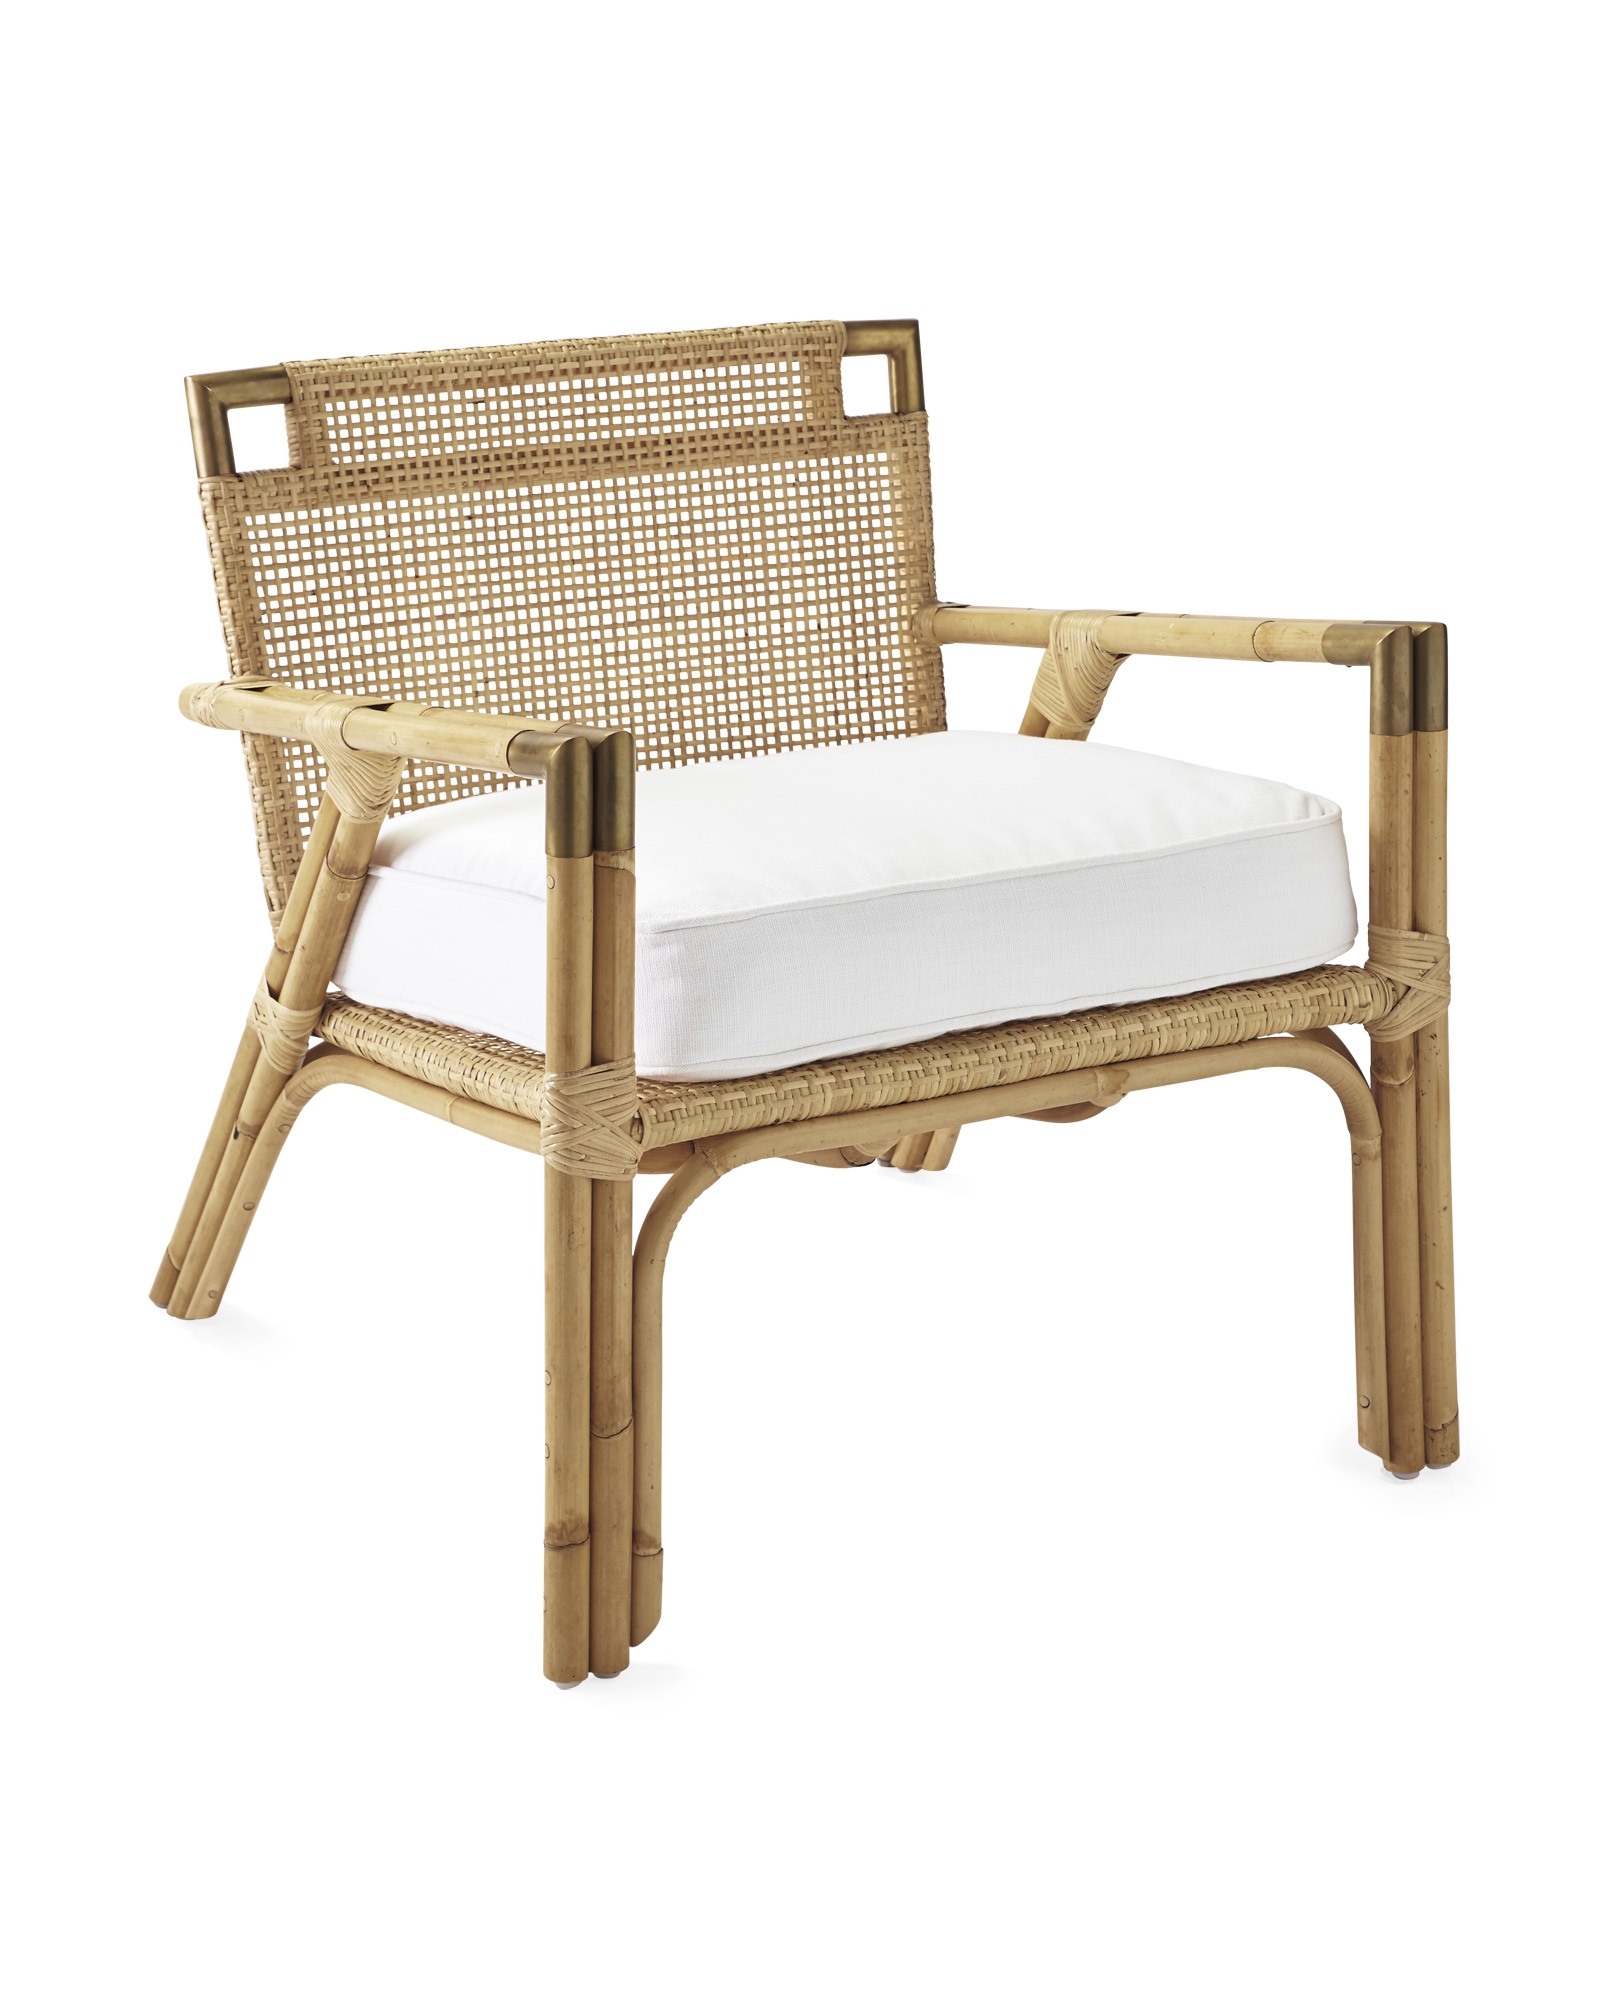 Mattituck Arm Chair with White Cushion - Image 0